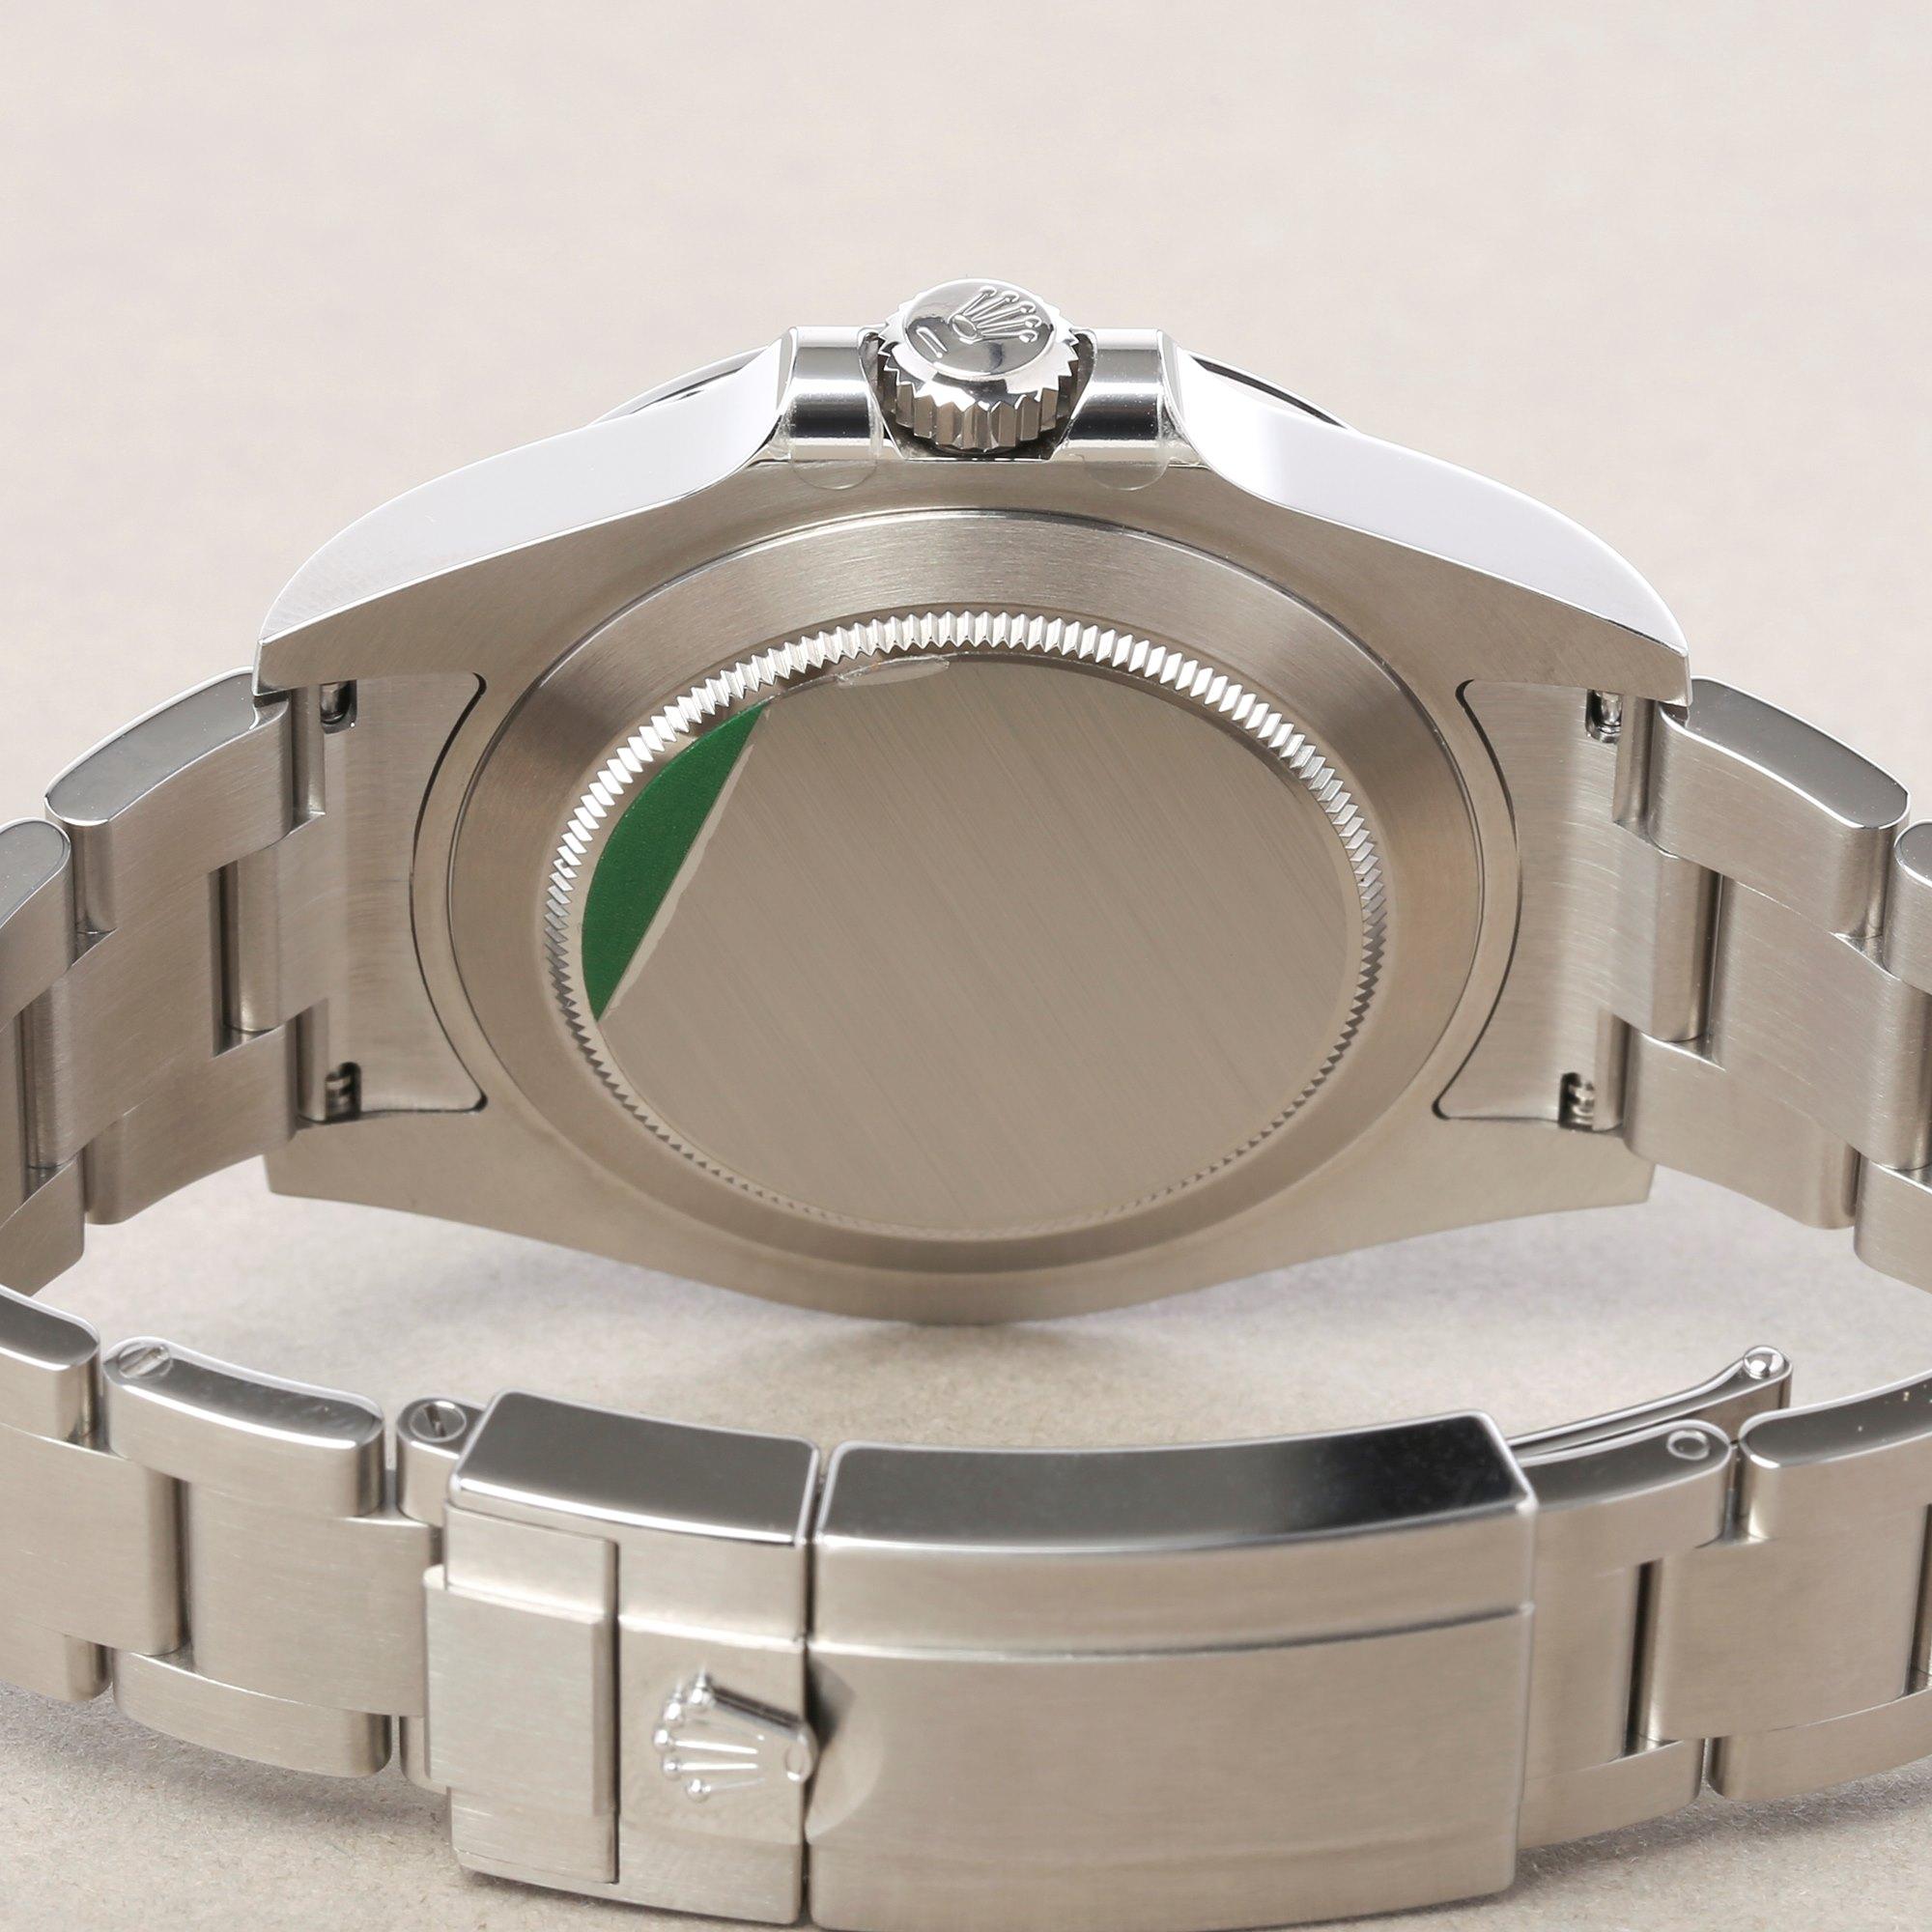 Rolex Explorer II 216570 Men Stainless Steel Watch 3